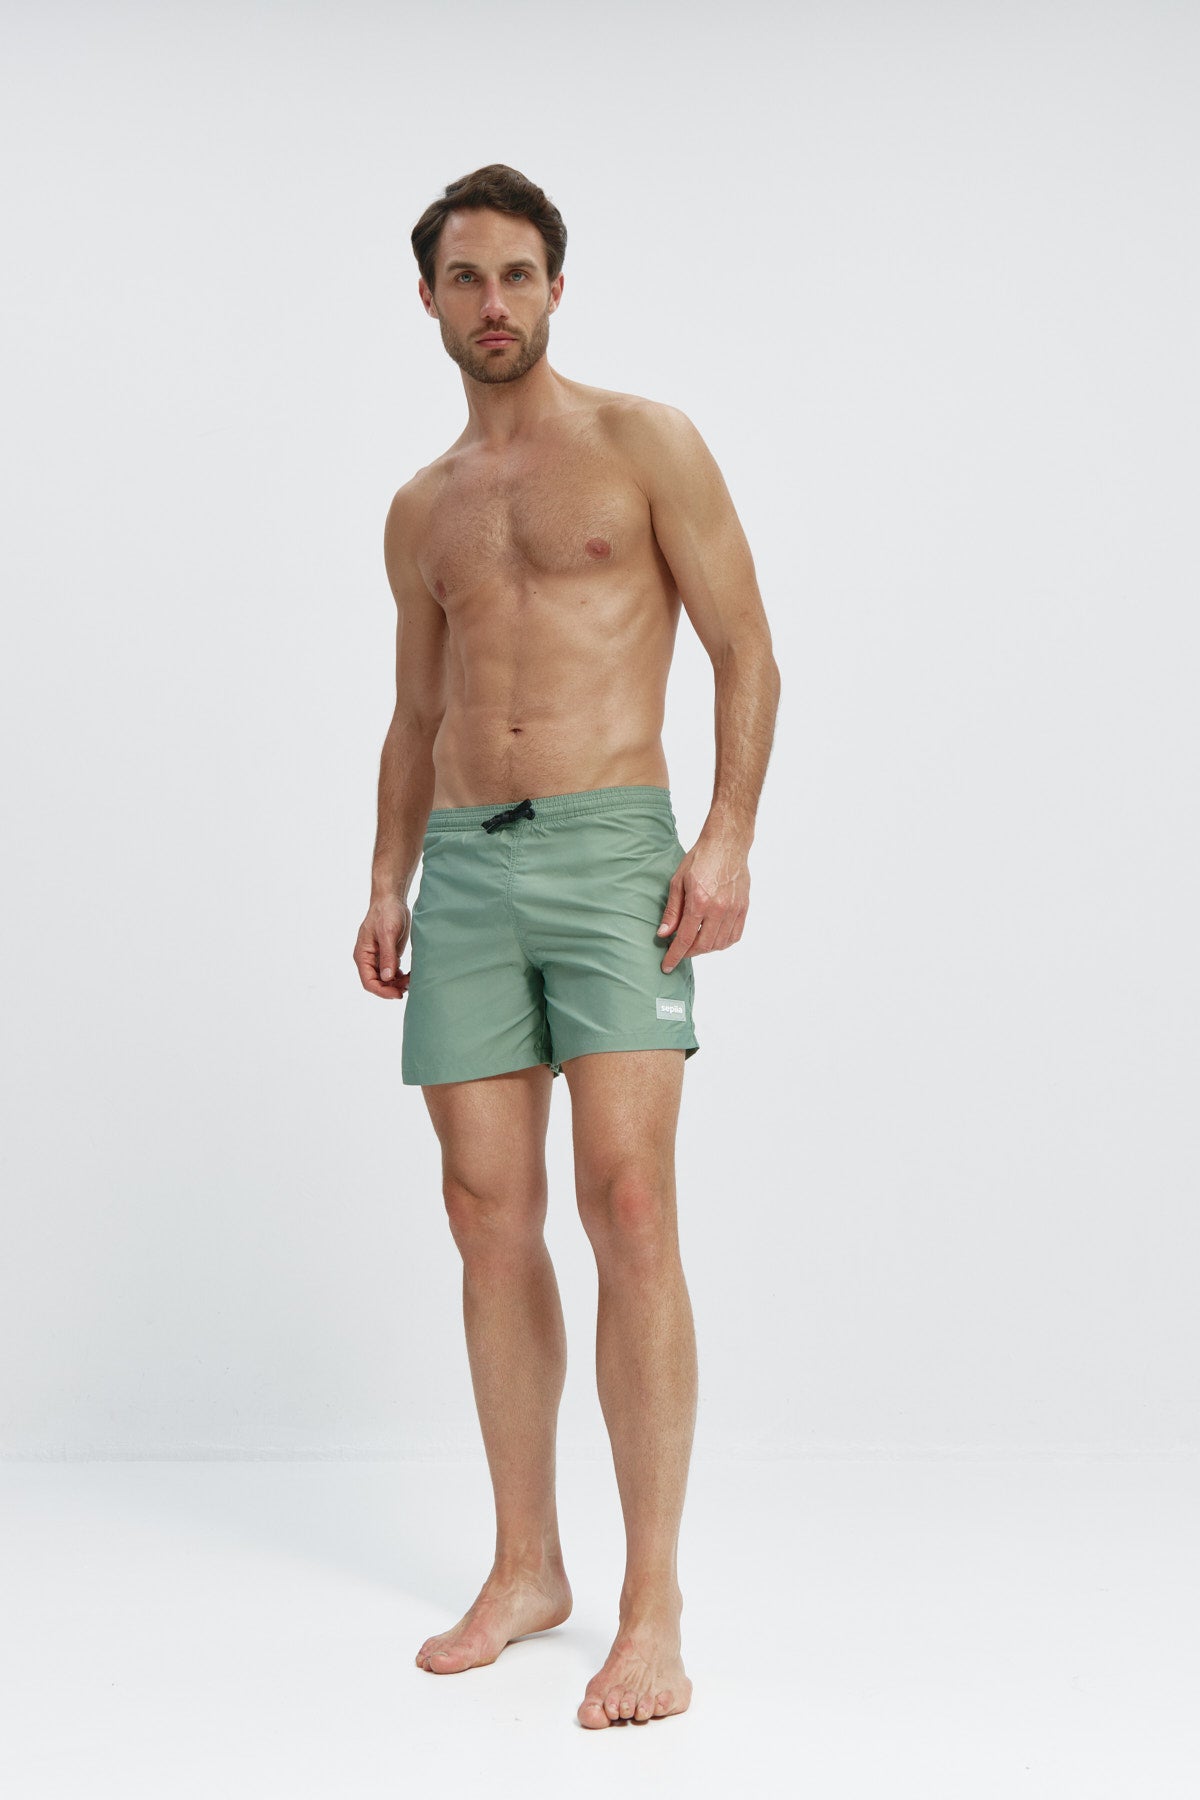 Bañador de hombre en color verde kenia con secado rápido, protección UV50+, ligero, resistente y cómodo. Foto cuerpo entero